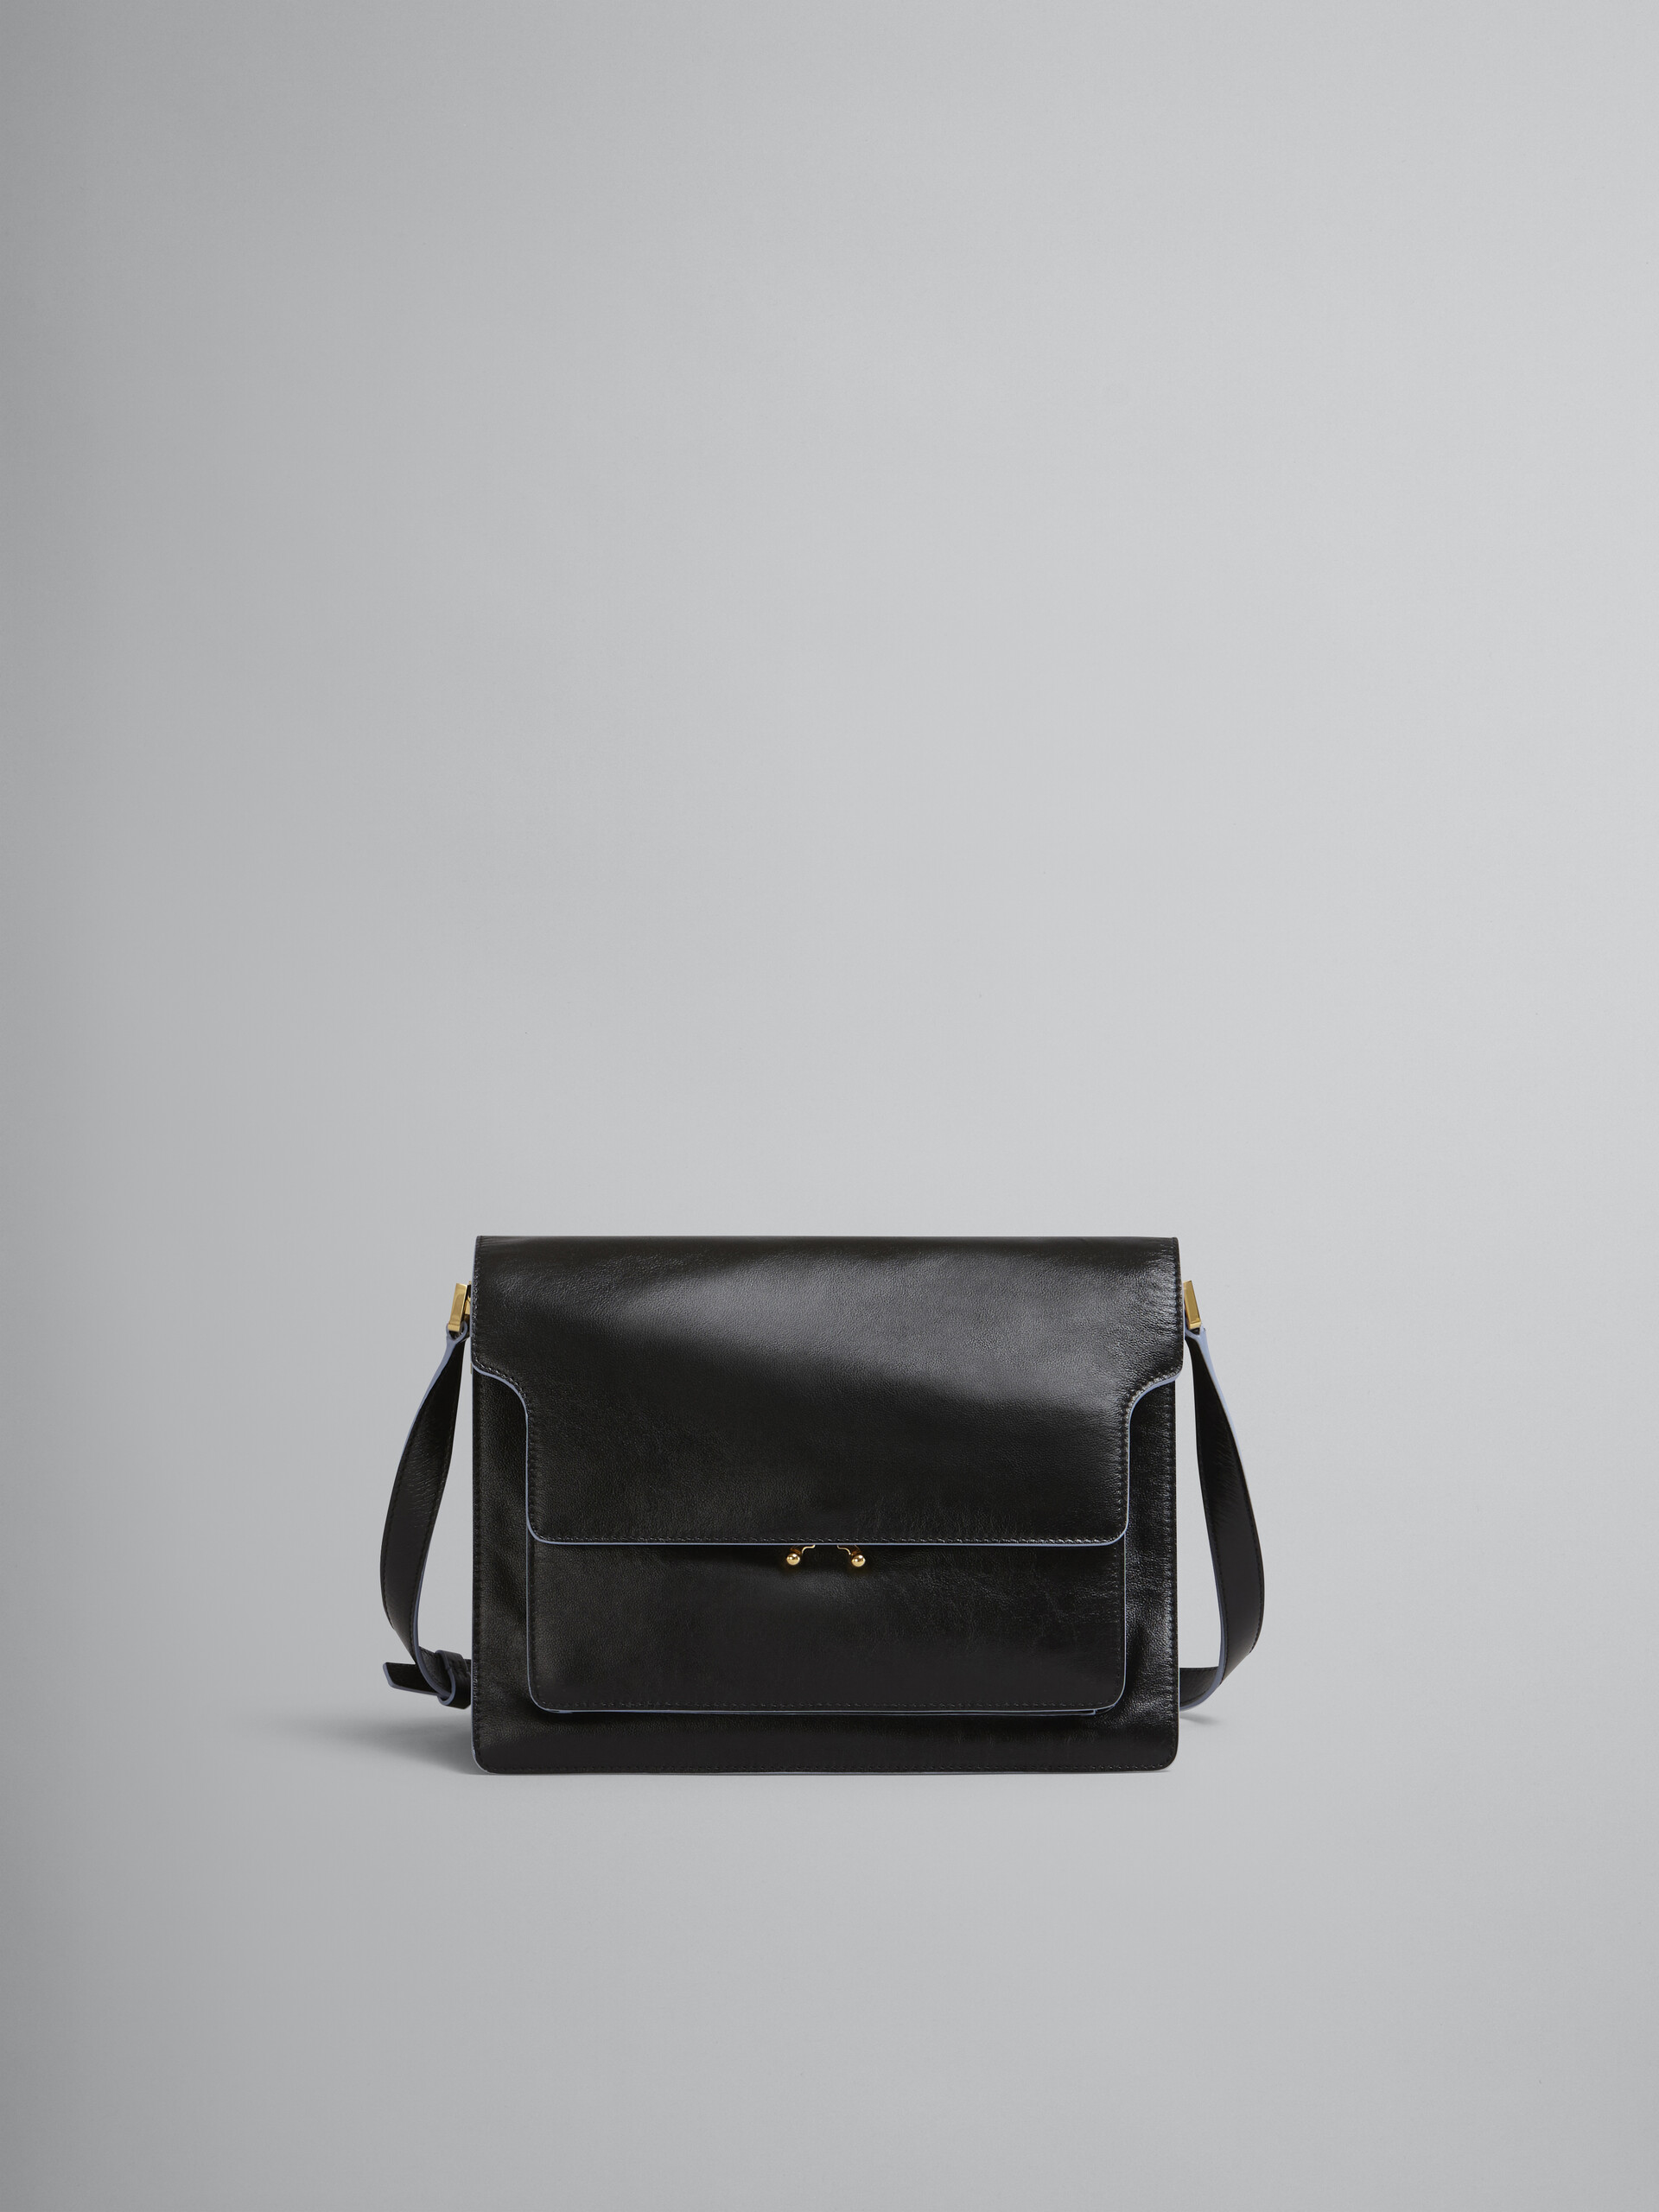 TRUNK SOFT large bag in black leather - Shoulder Bags - Image 1